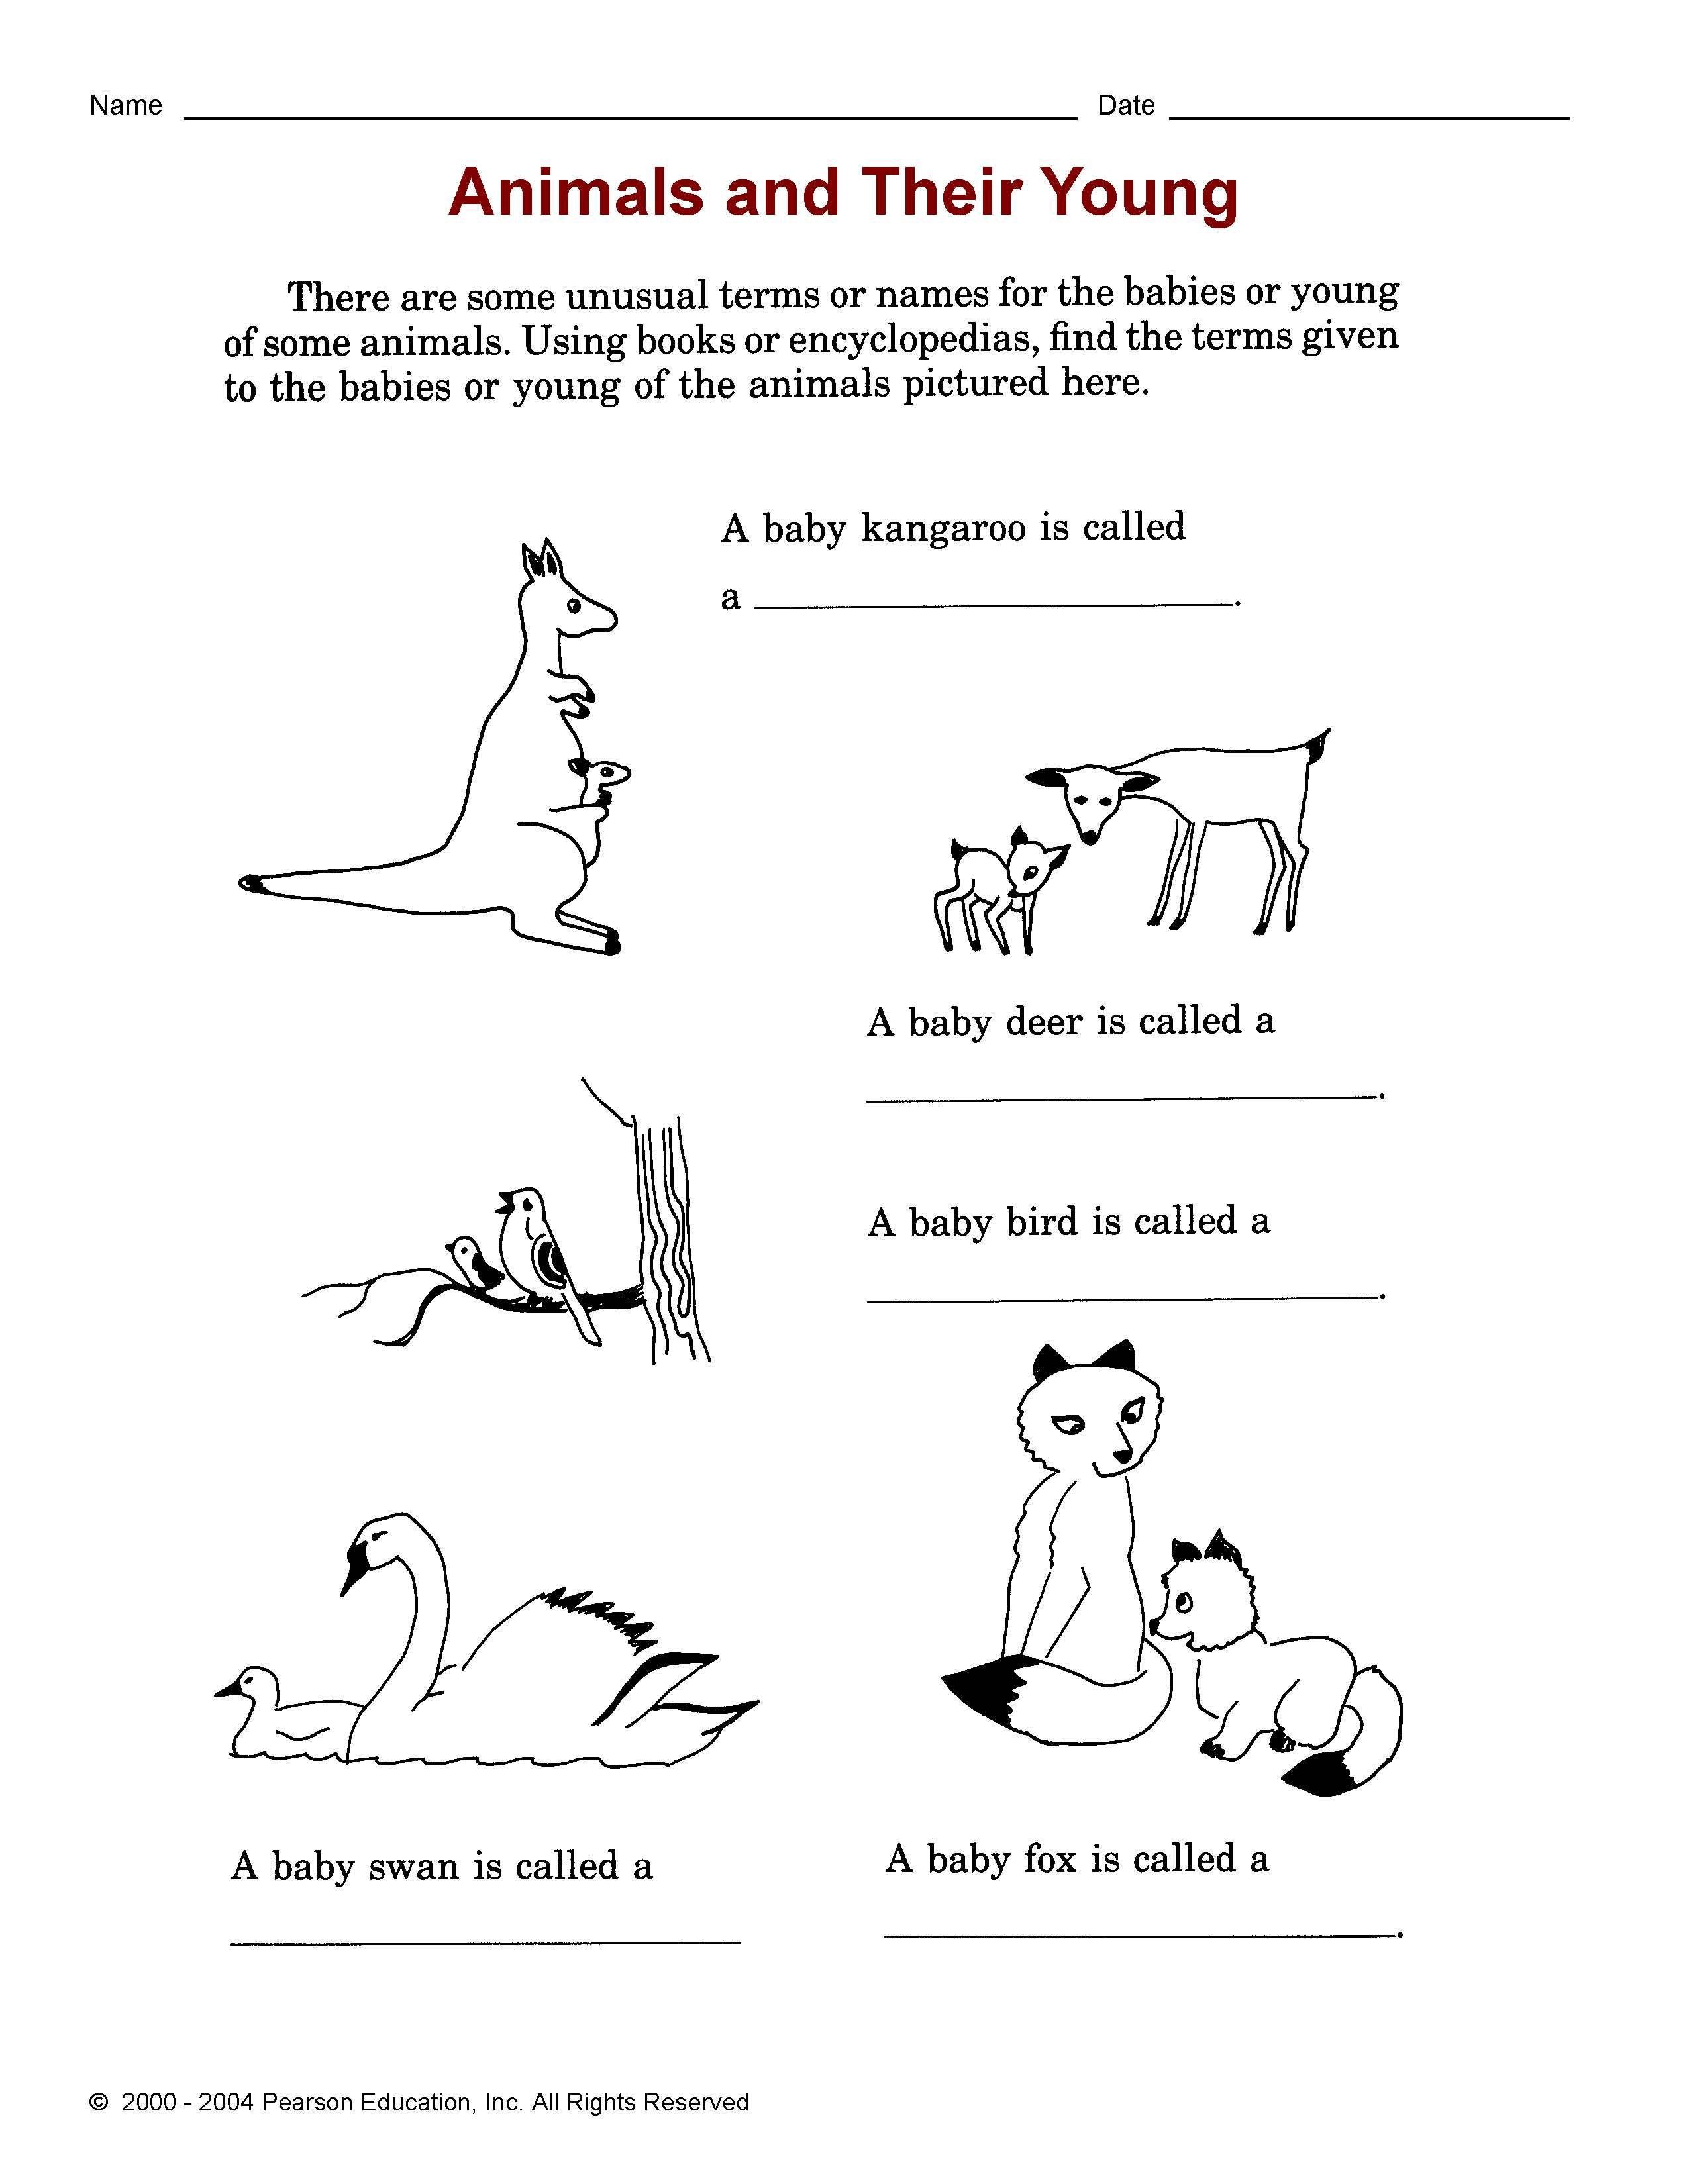 Сочинение на тему моё любимое животное на английском языке 5 класс с переводом